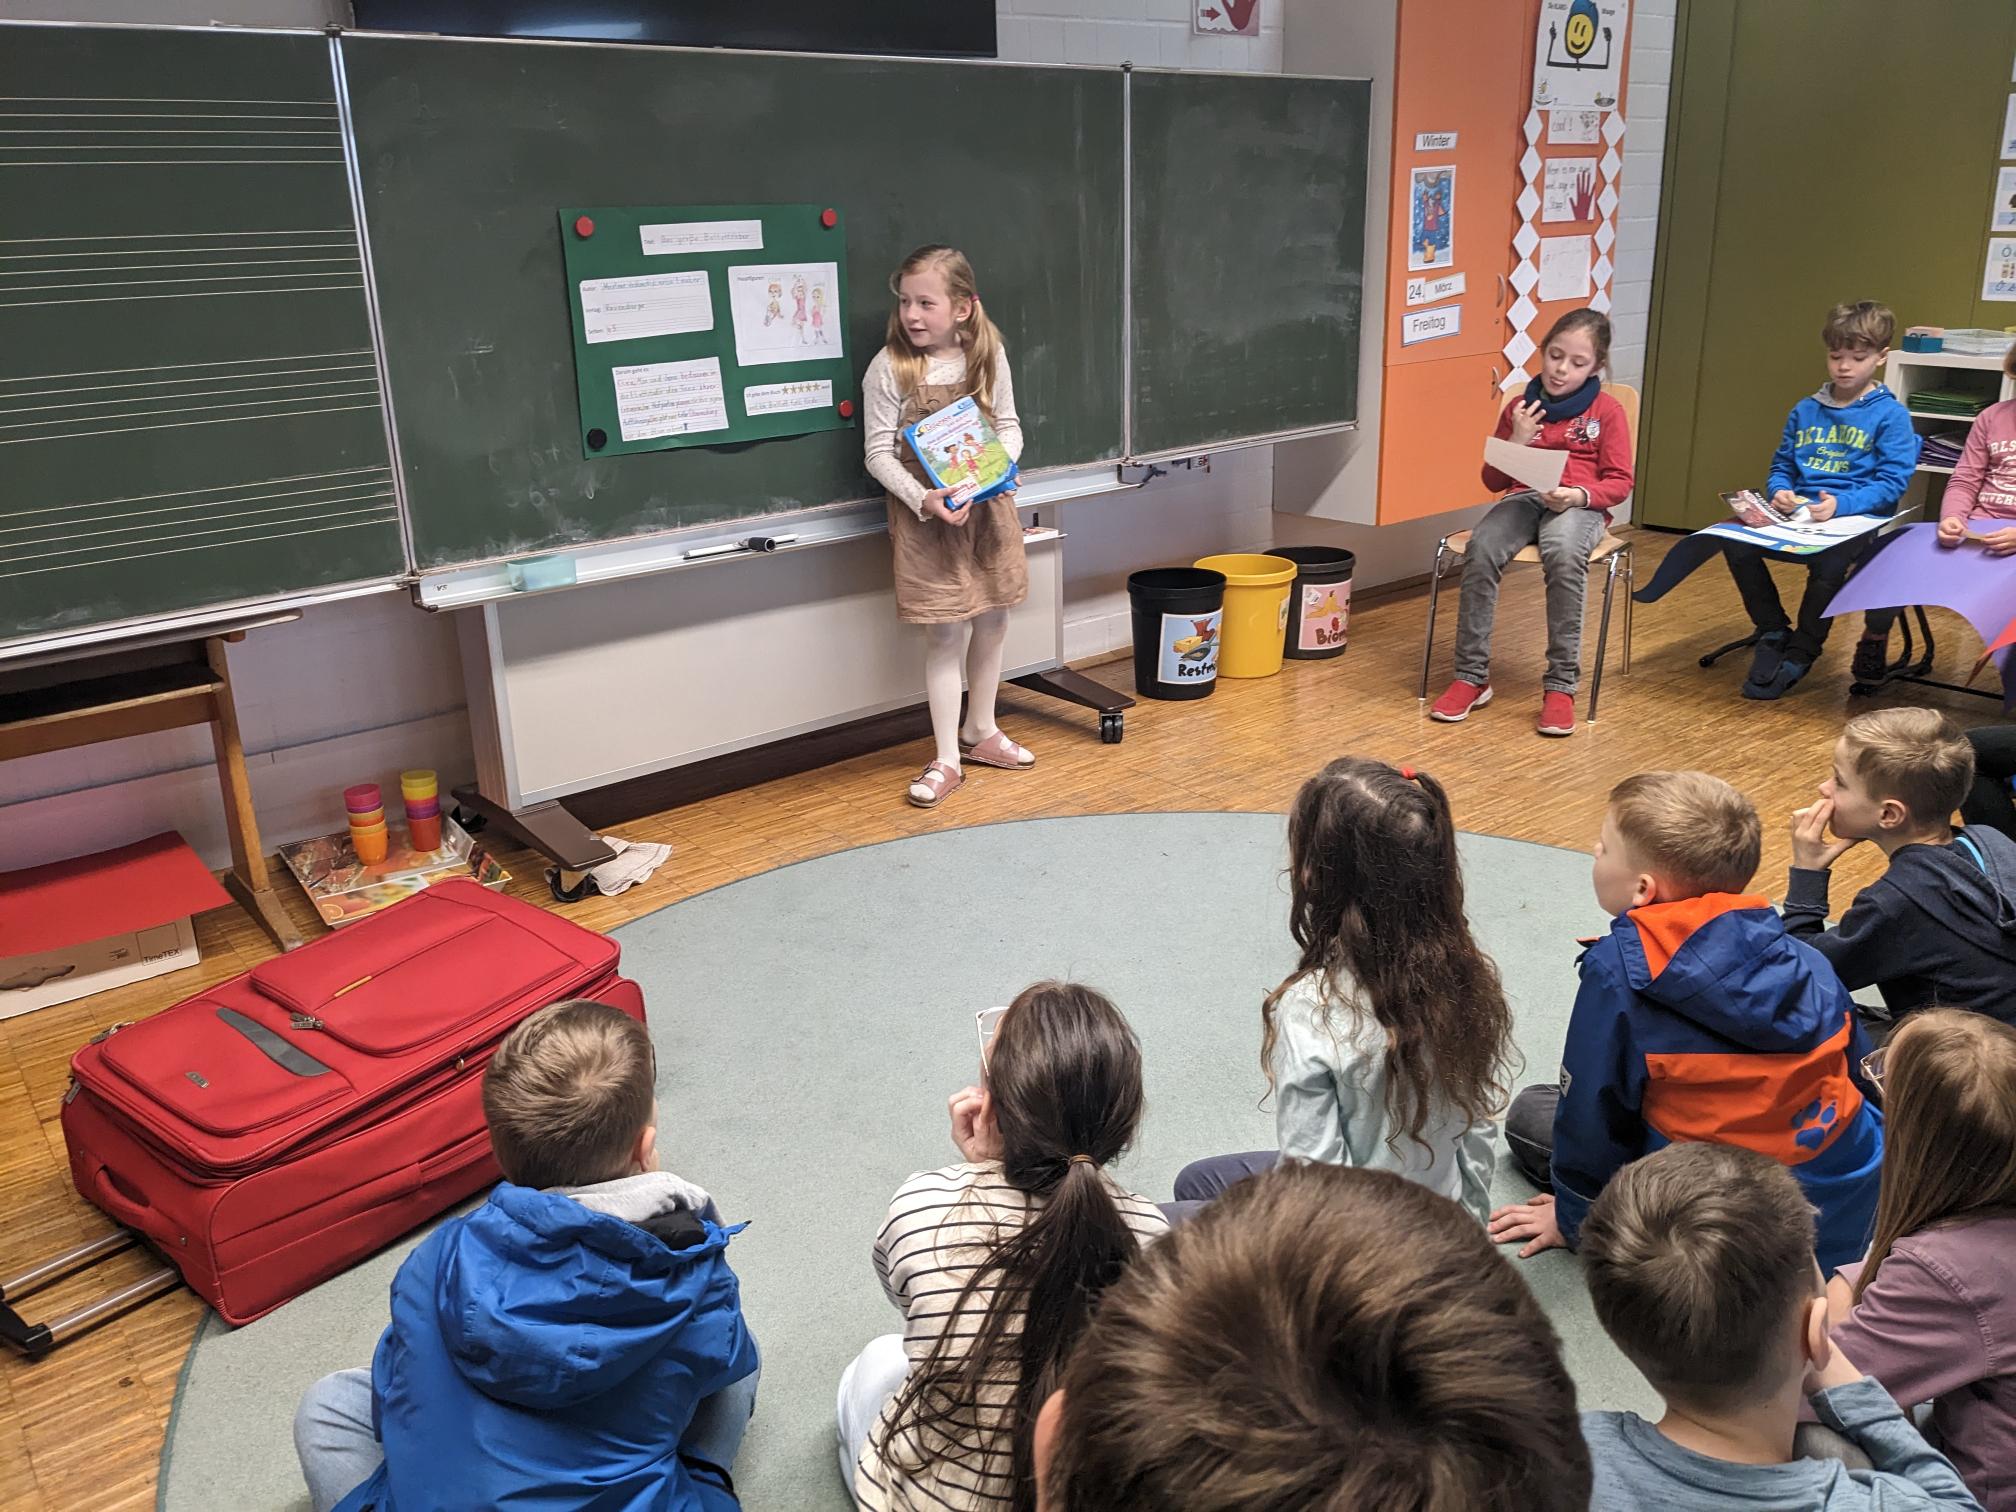 Ein Kind stellt ein Buch an der Tafel vor. Die Klasse beobachtet sie aufmerksam.